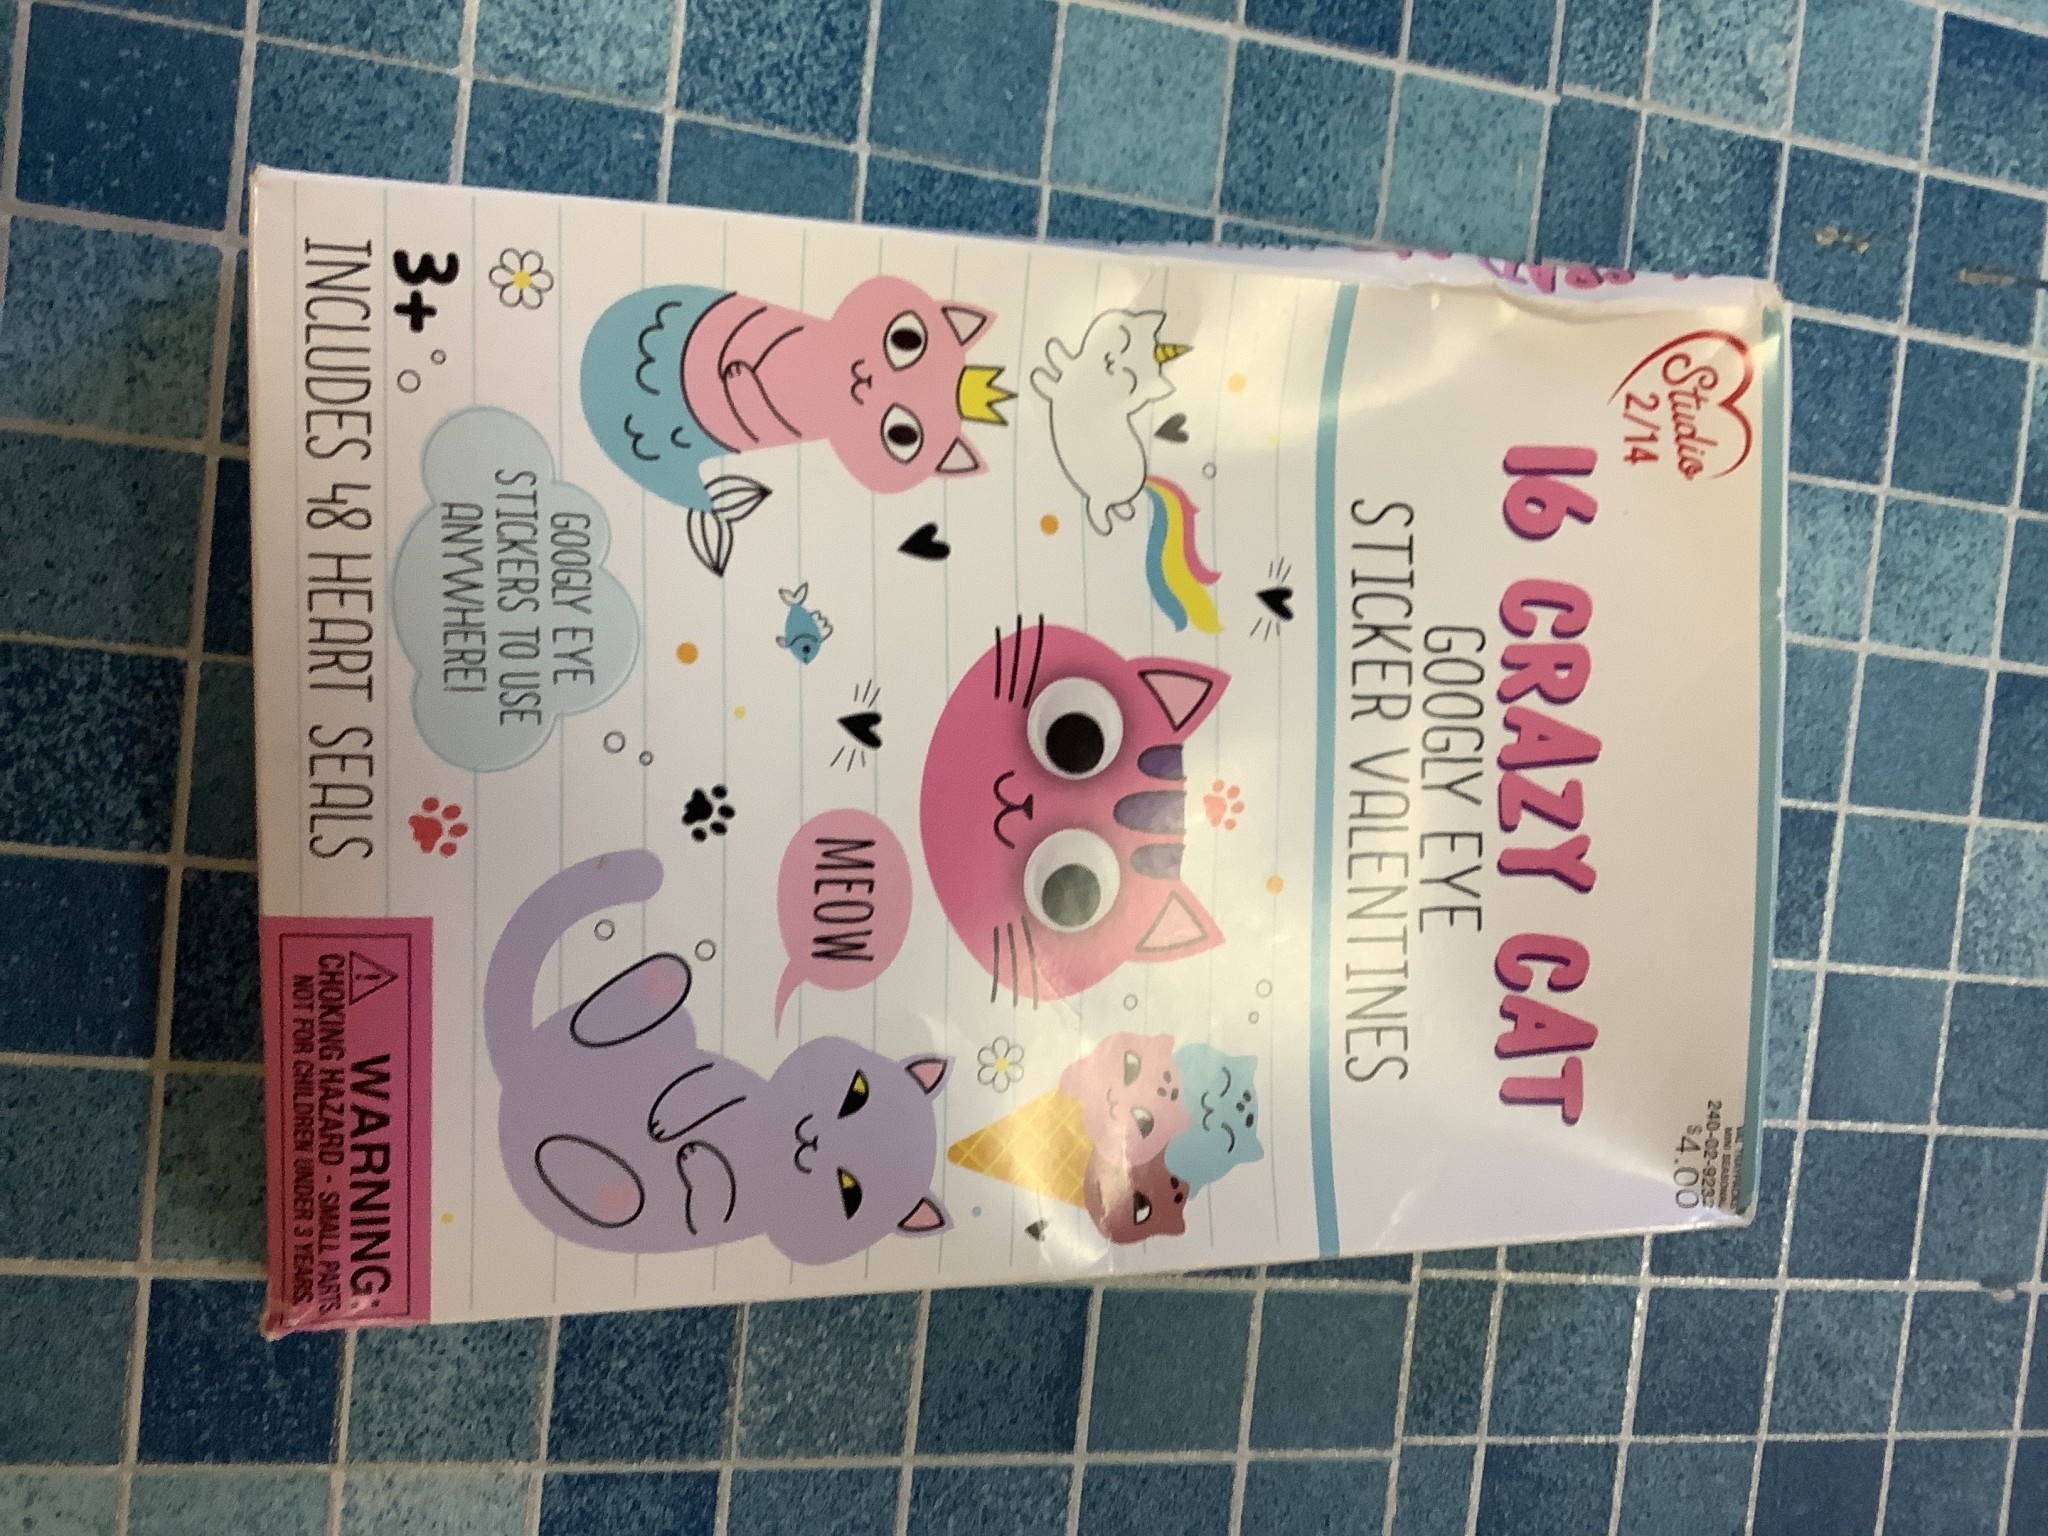 16ct Crazy Cat Valentine's Day Googly Eye Kids Exchange Cards